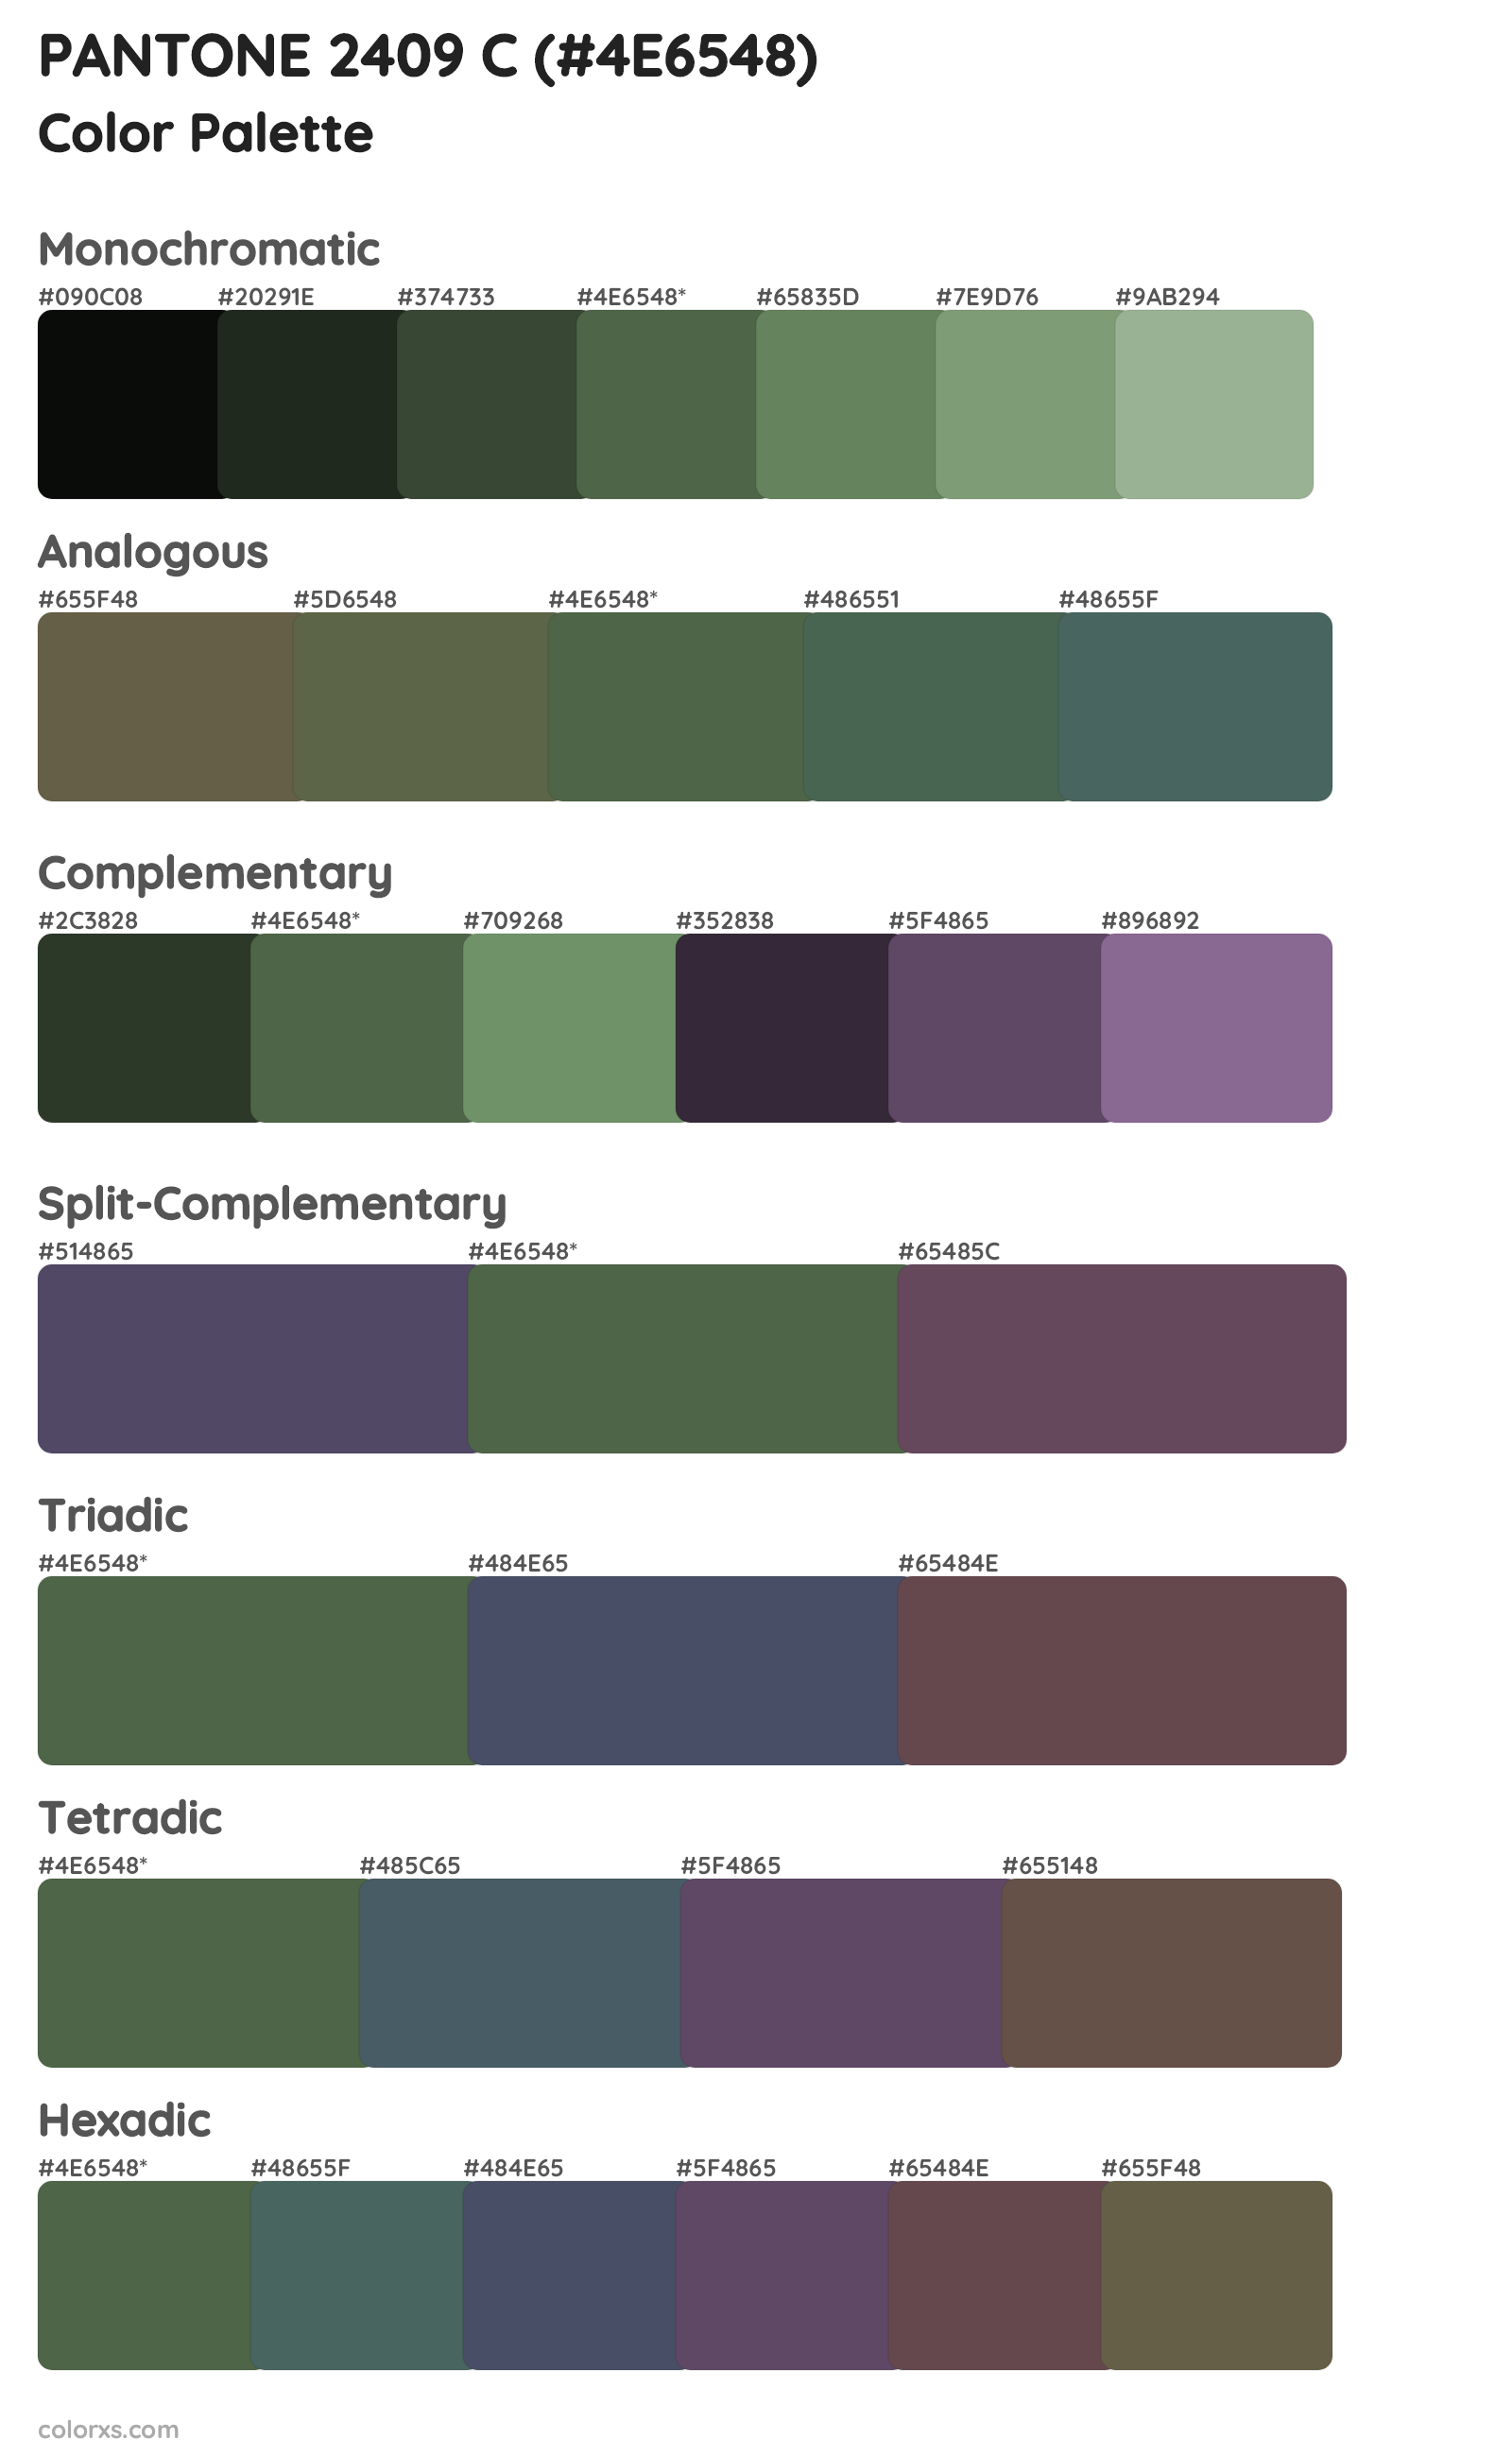 PANTONE 2409 C Color Scheme Palettes